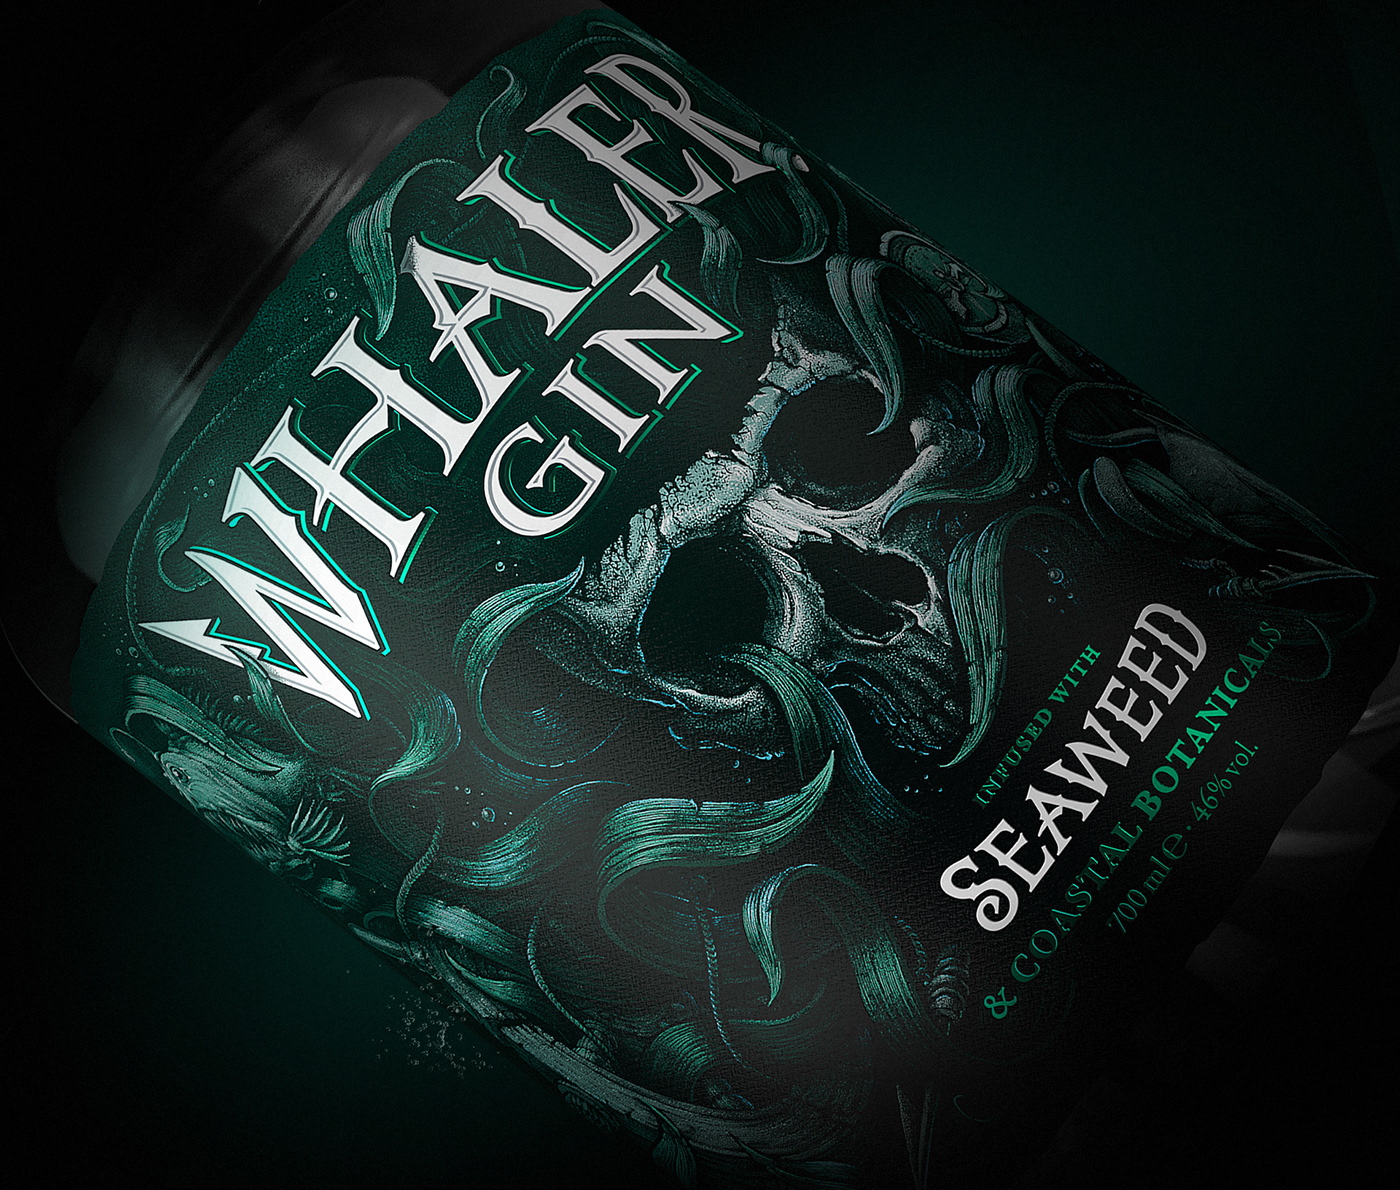 gin Label sea skull whaler branding  Logo Design brand identity Packaging FMCG